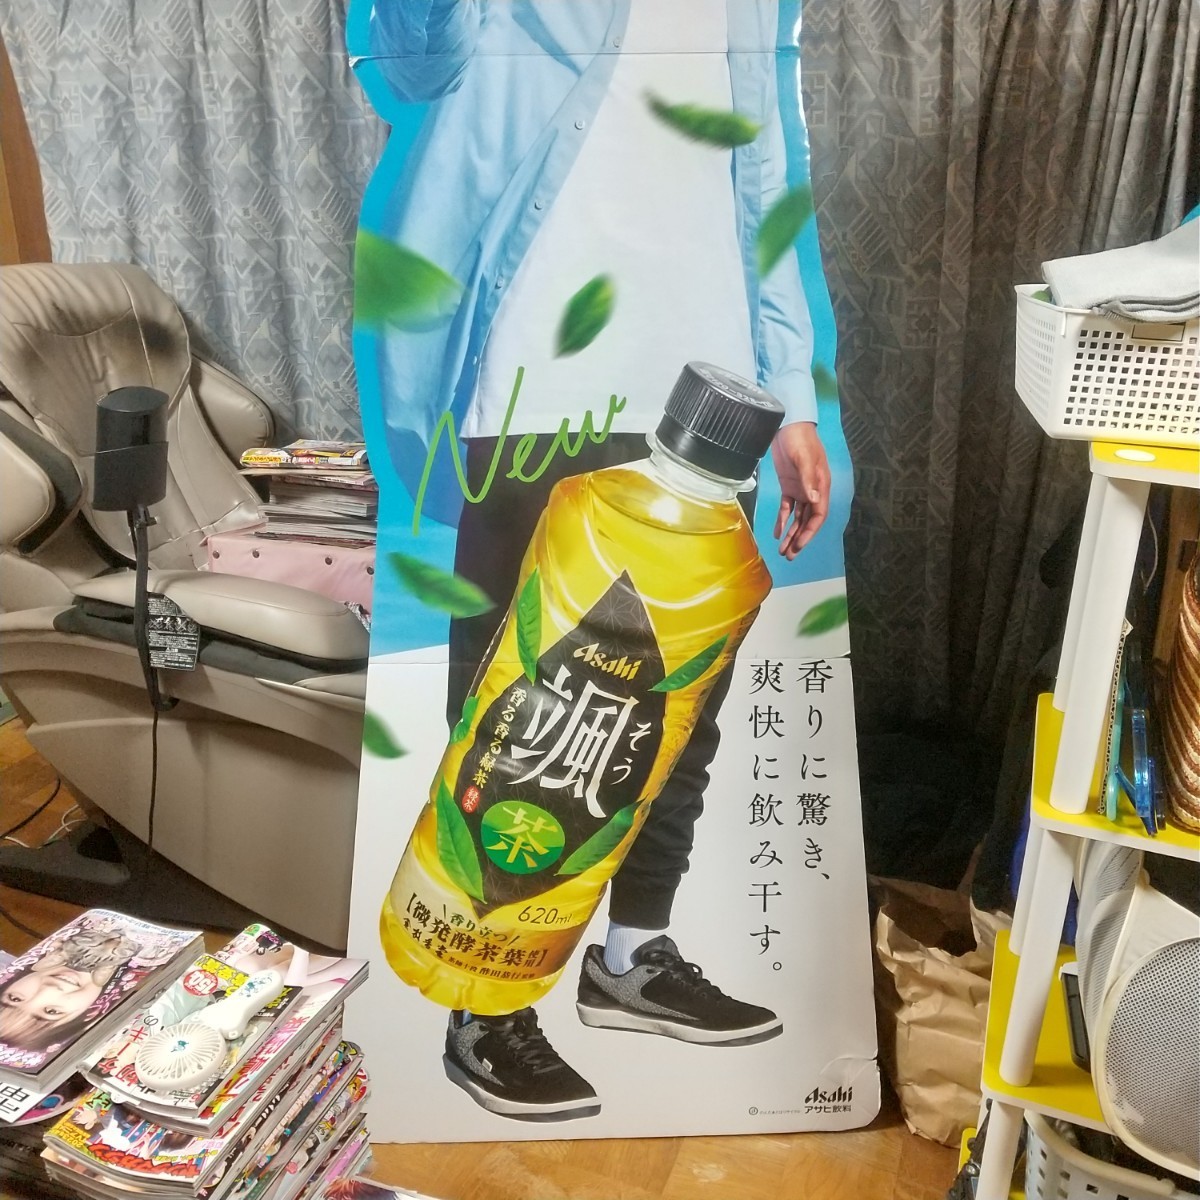 [ только ] исторический самый длинный новейший супер в натуральную величину ... как 210.. Asahi напиток в натуральную величину panel не продается проглядеть ..!